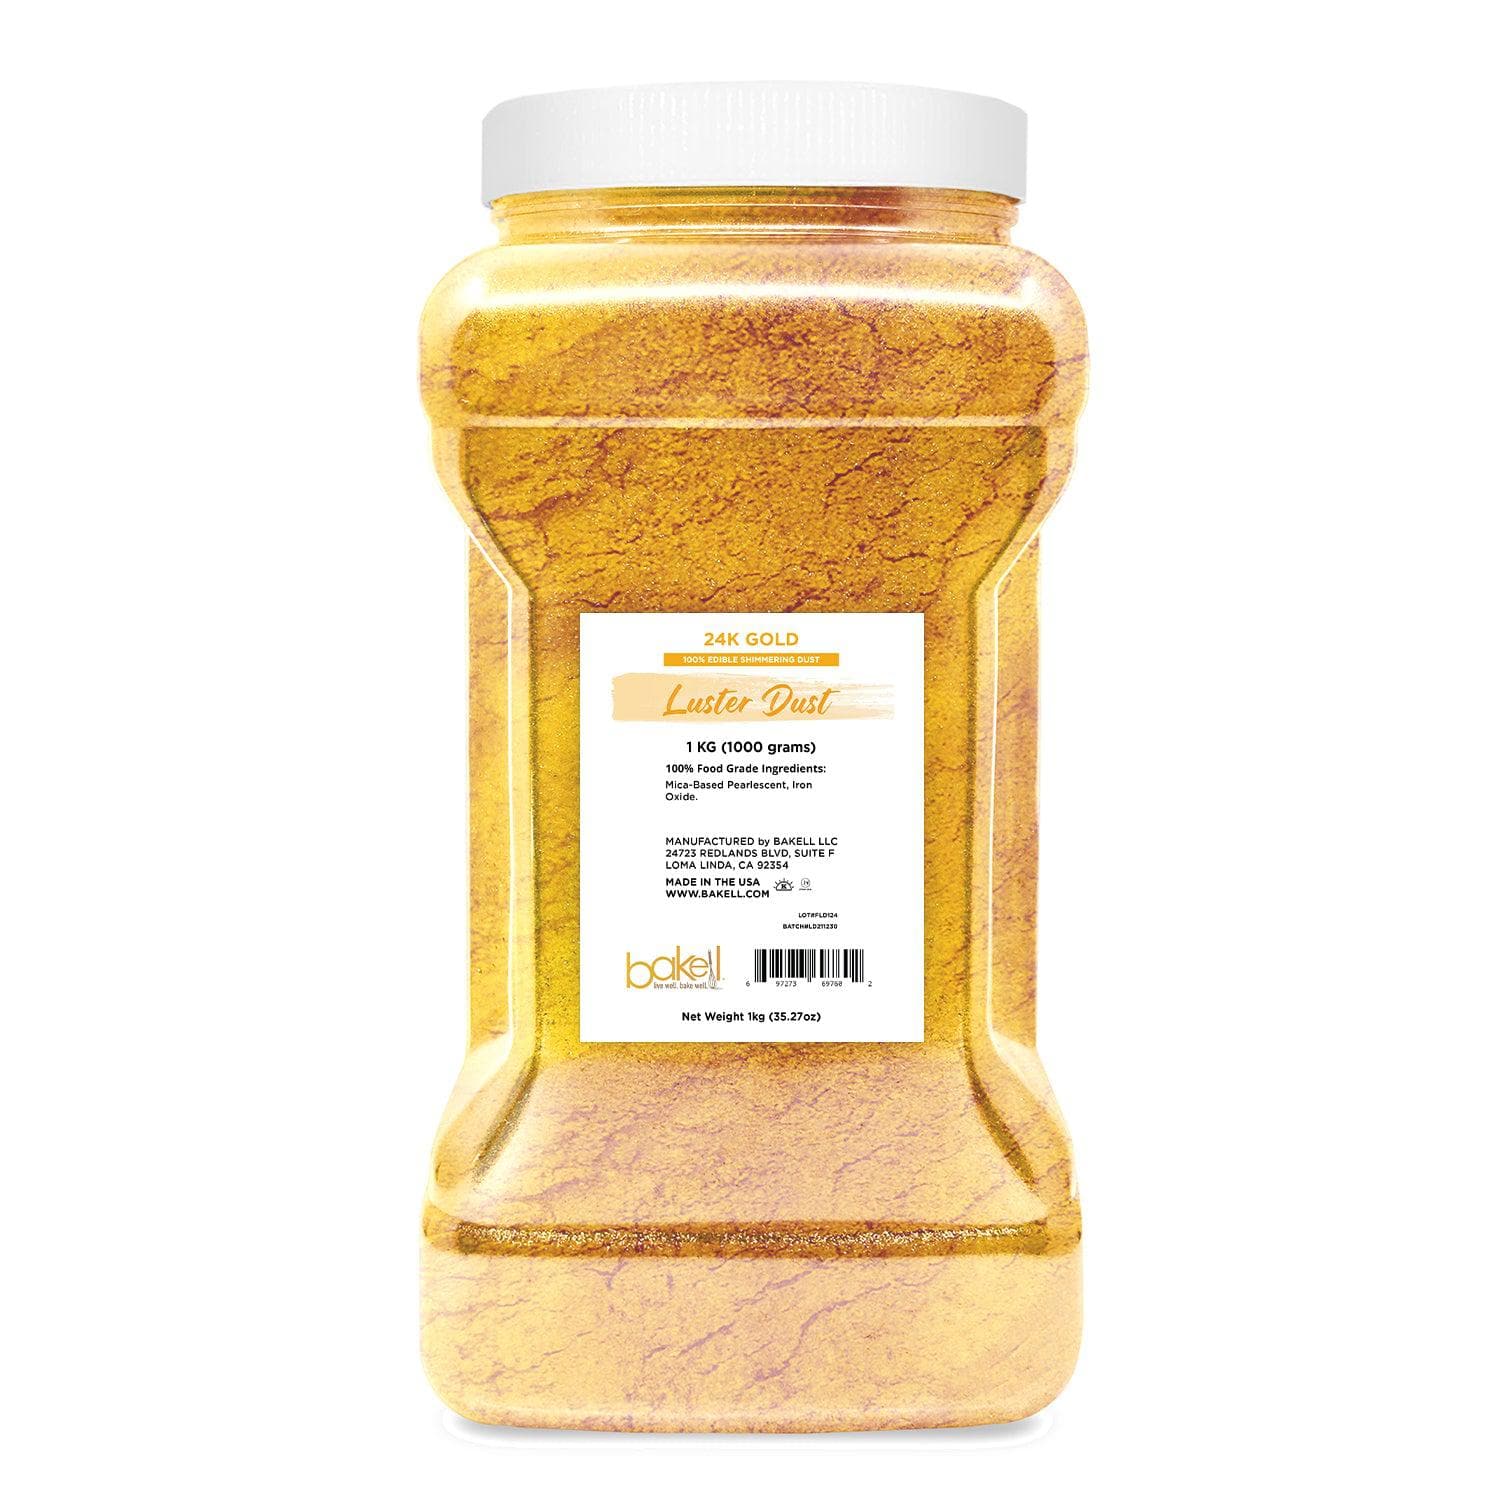 24K Gold Luster Dust, Bulk Size | 100% Edible & Kosher Pareve